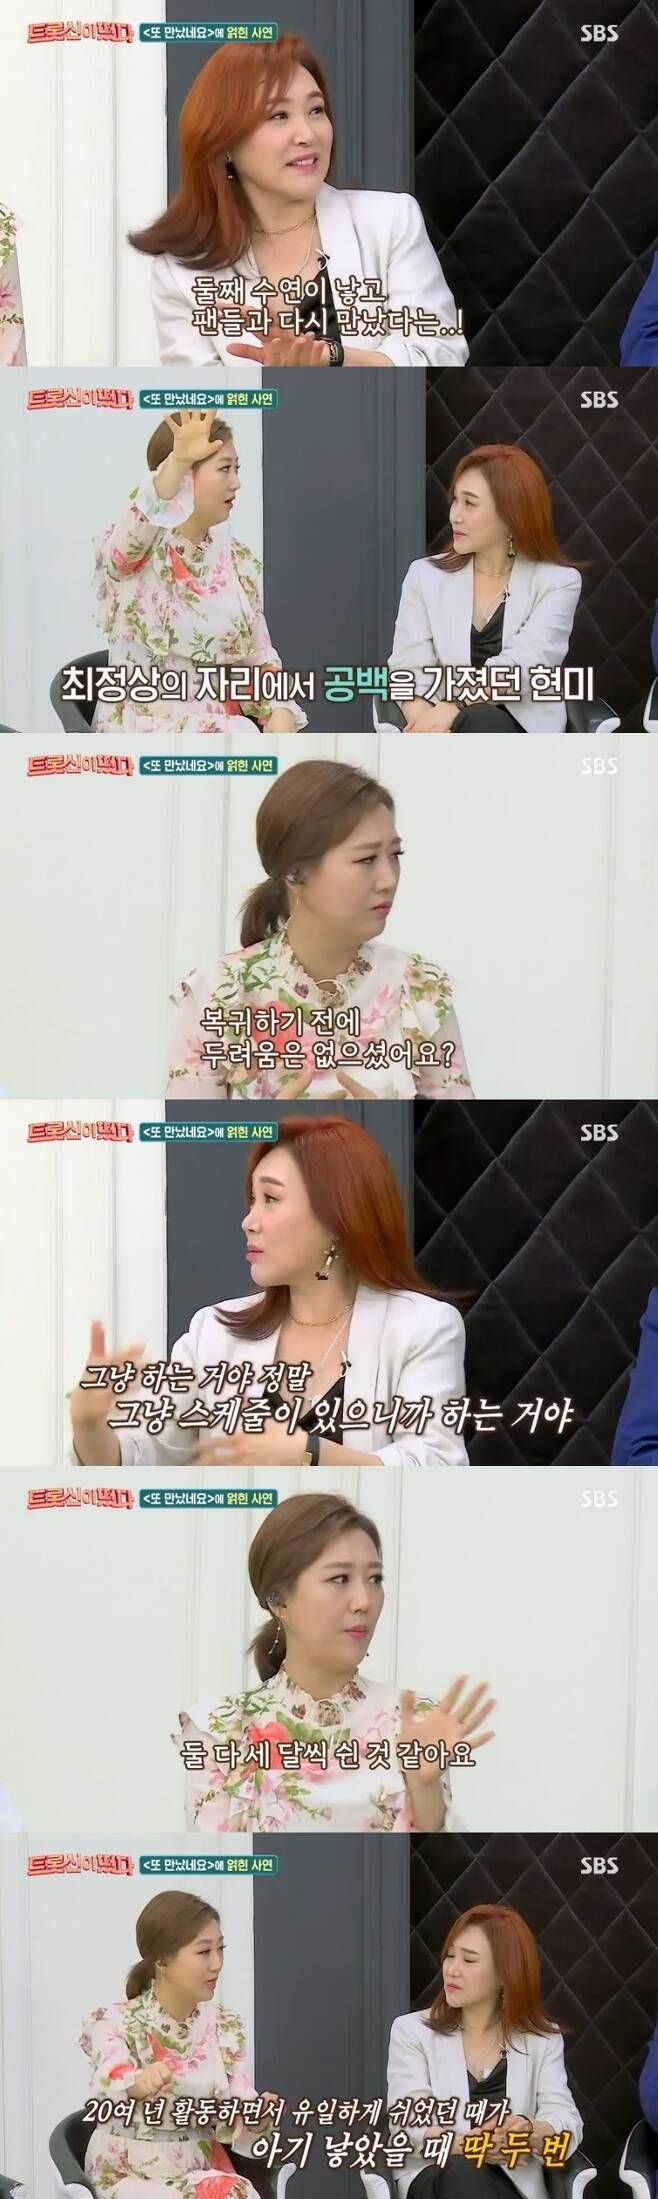 17일 방송된 SBS 예능 프로그램 '트롯신이 떴다'에서는 가수 장윤정과 주현미가 출산 후 고통에 대해 공감했다. 사진=SBS '트롯신이 떴다'방송 캡처